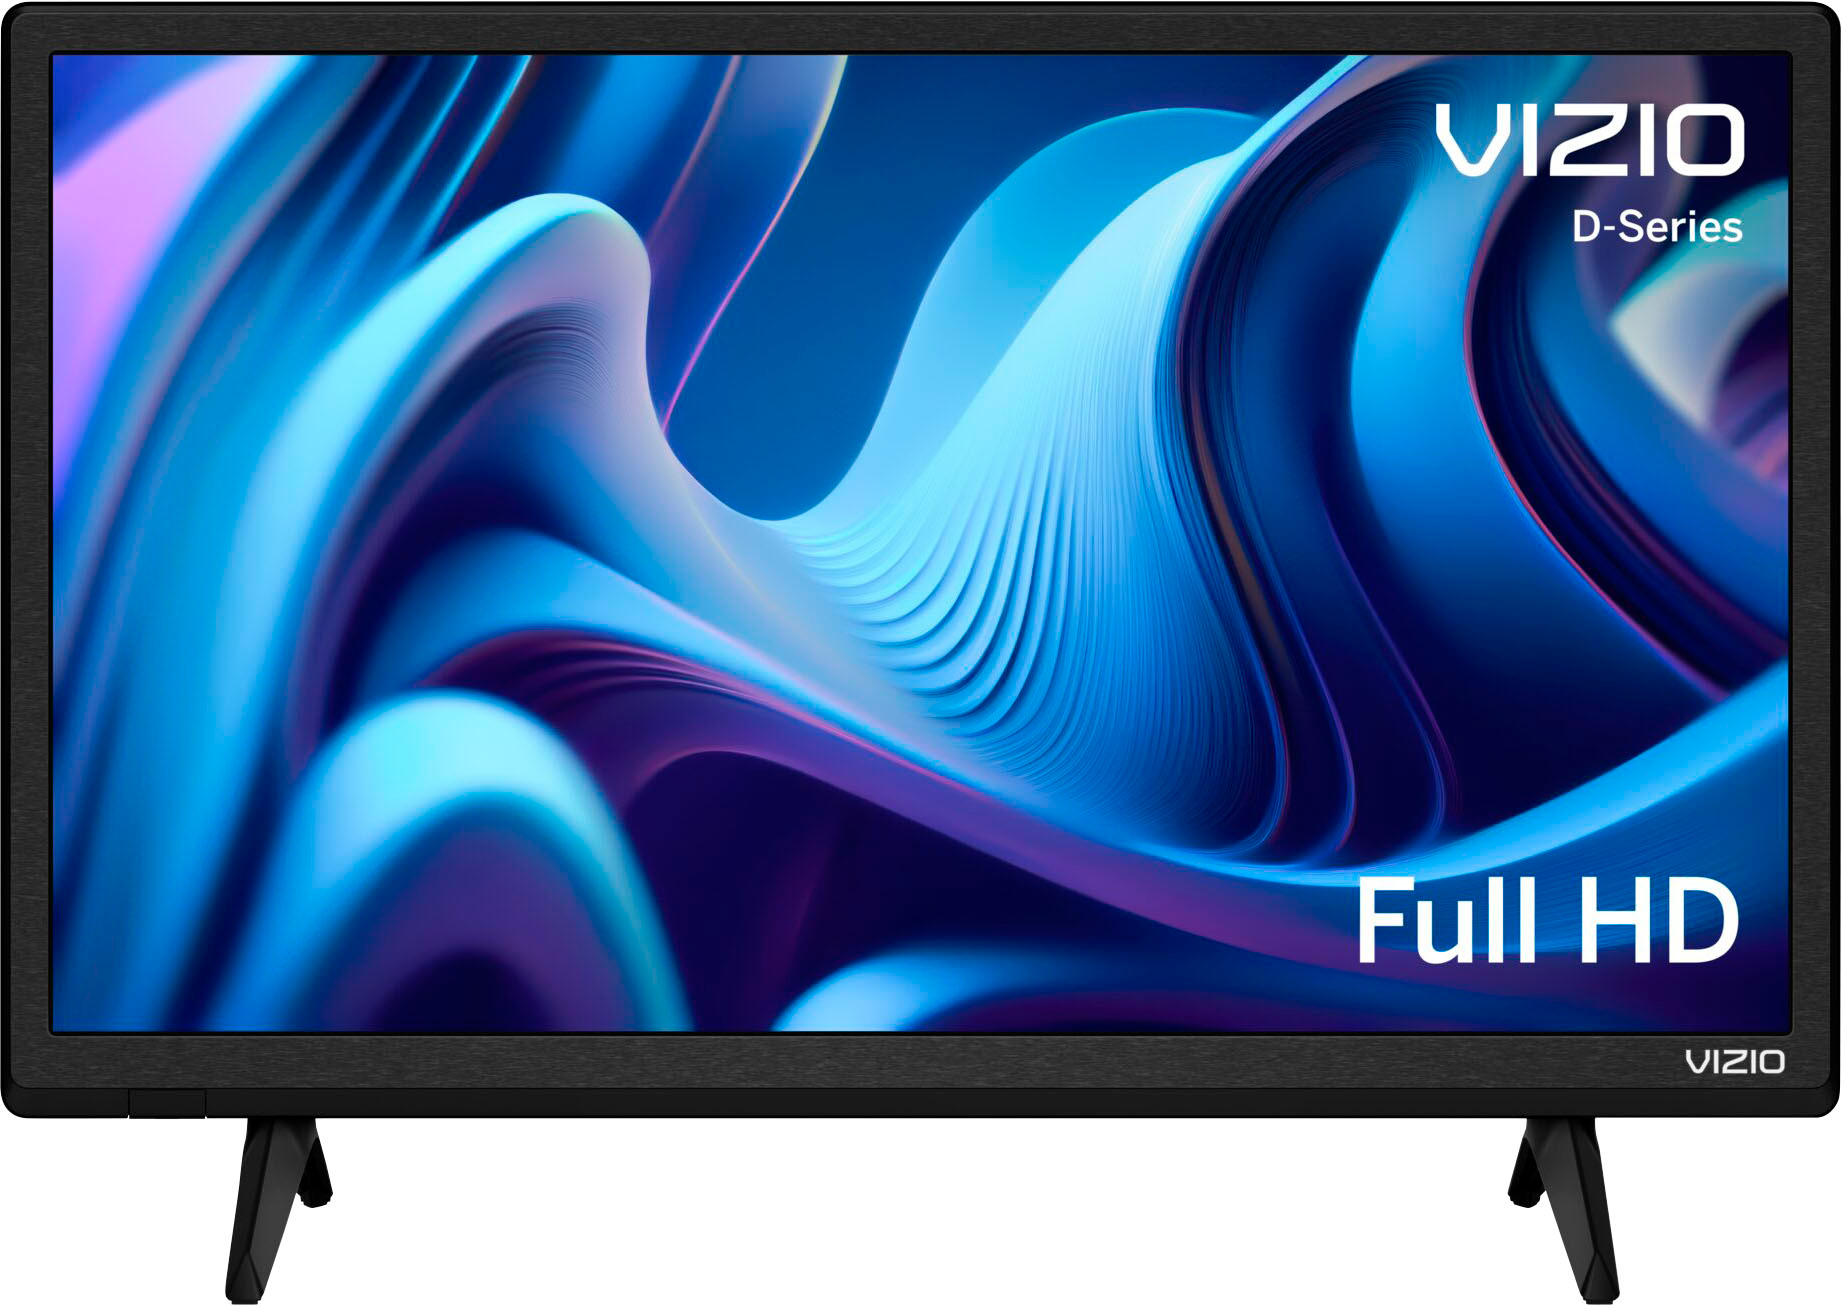 Angle View: VIZIO - 24" Class D-Series LED 720P Smart TV